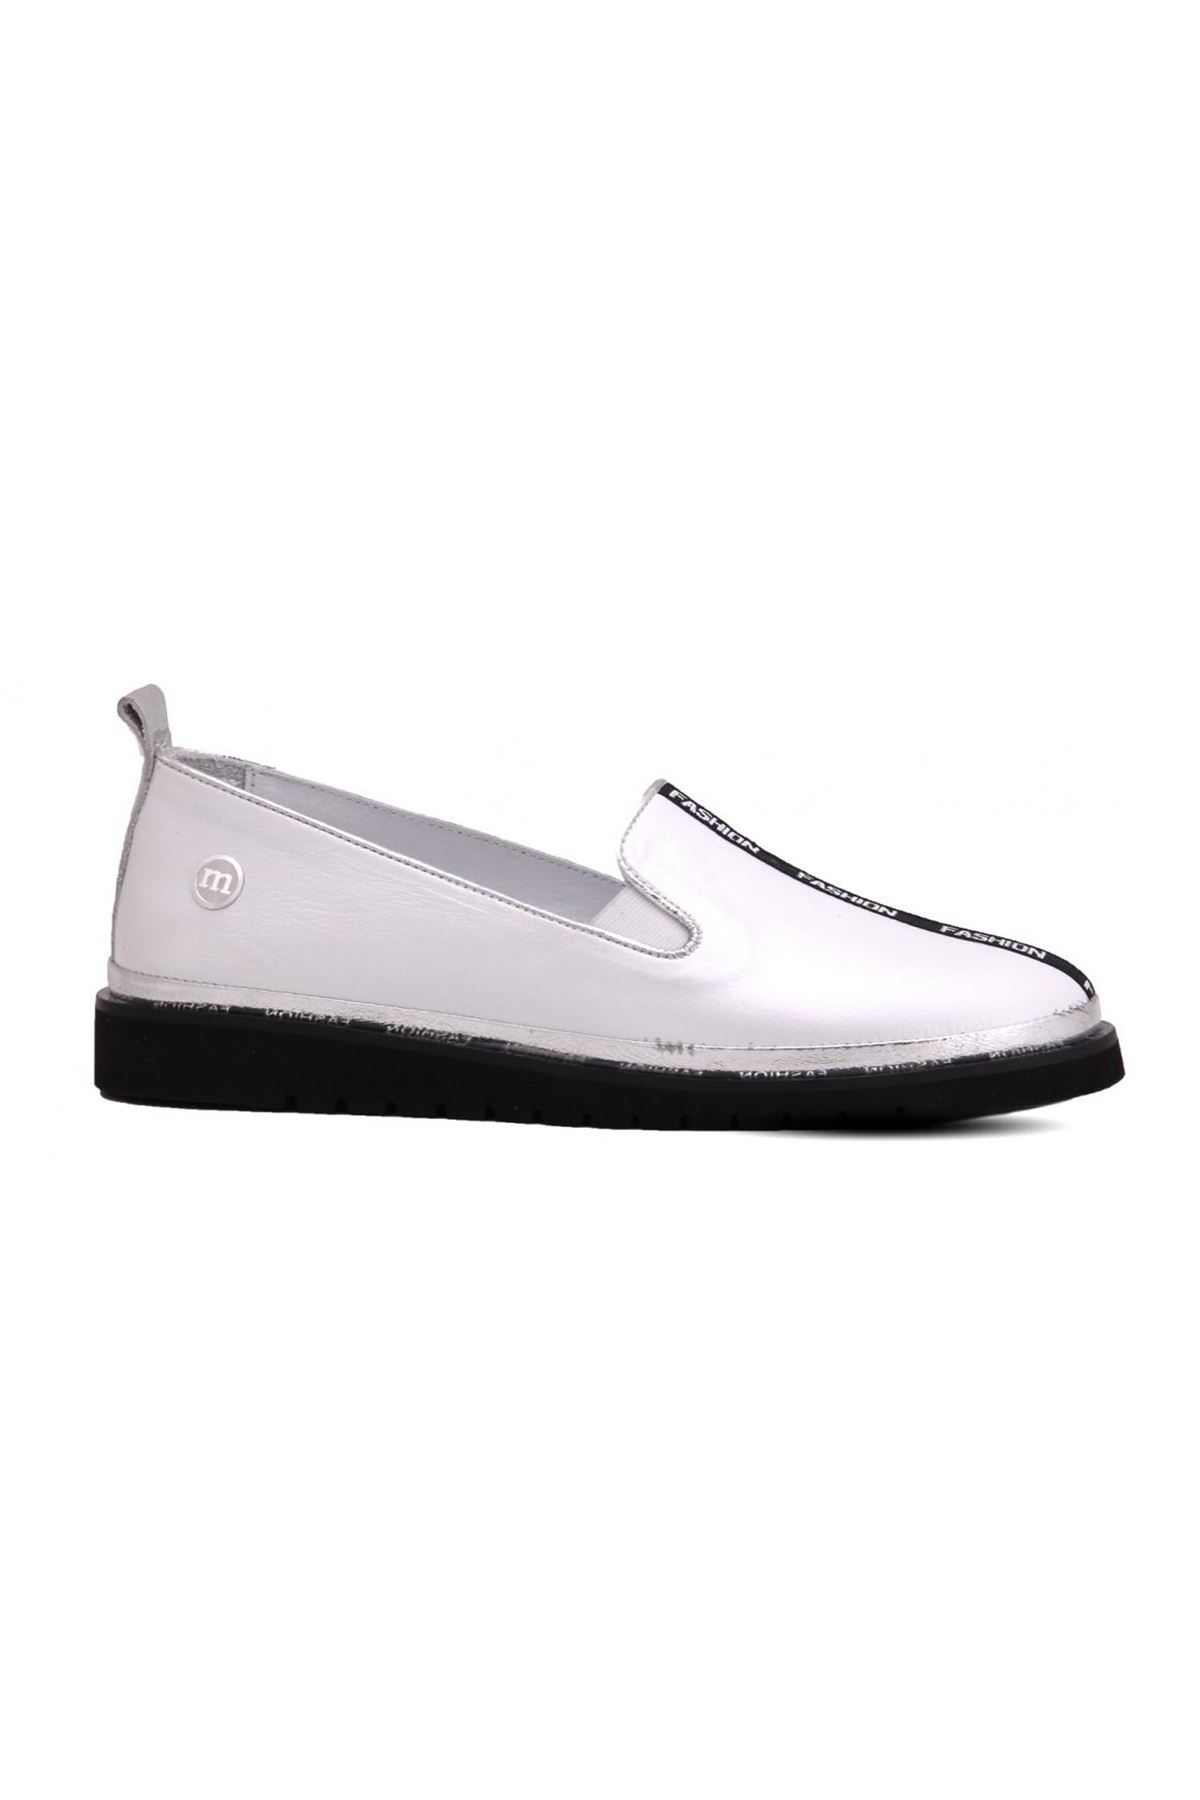 D20YA-875 Mammamia Günlük Bayan Ayakkabı - Beyaz